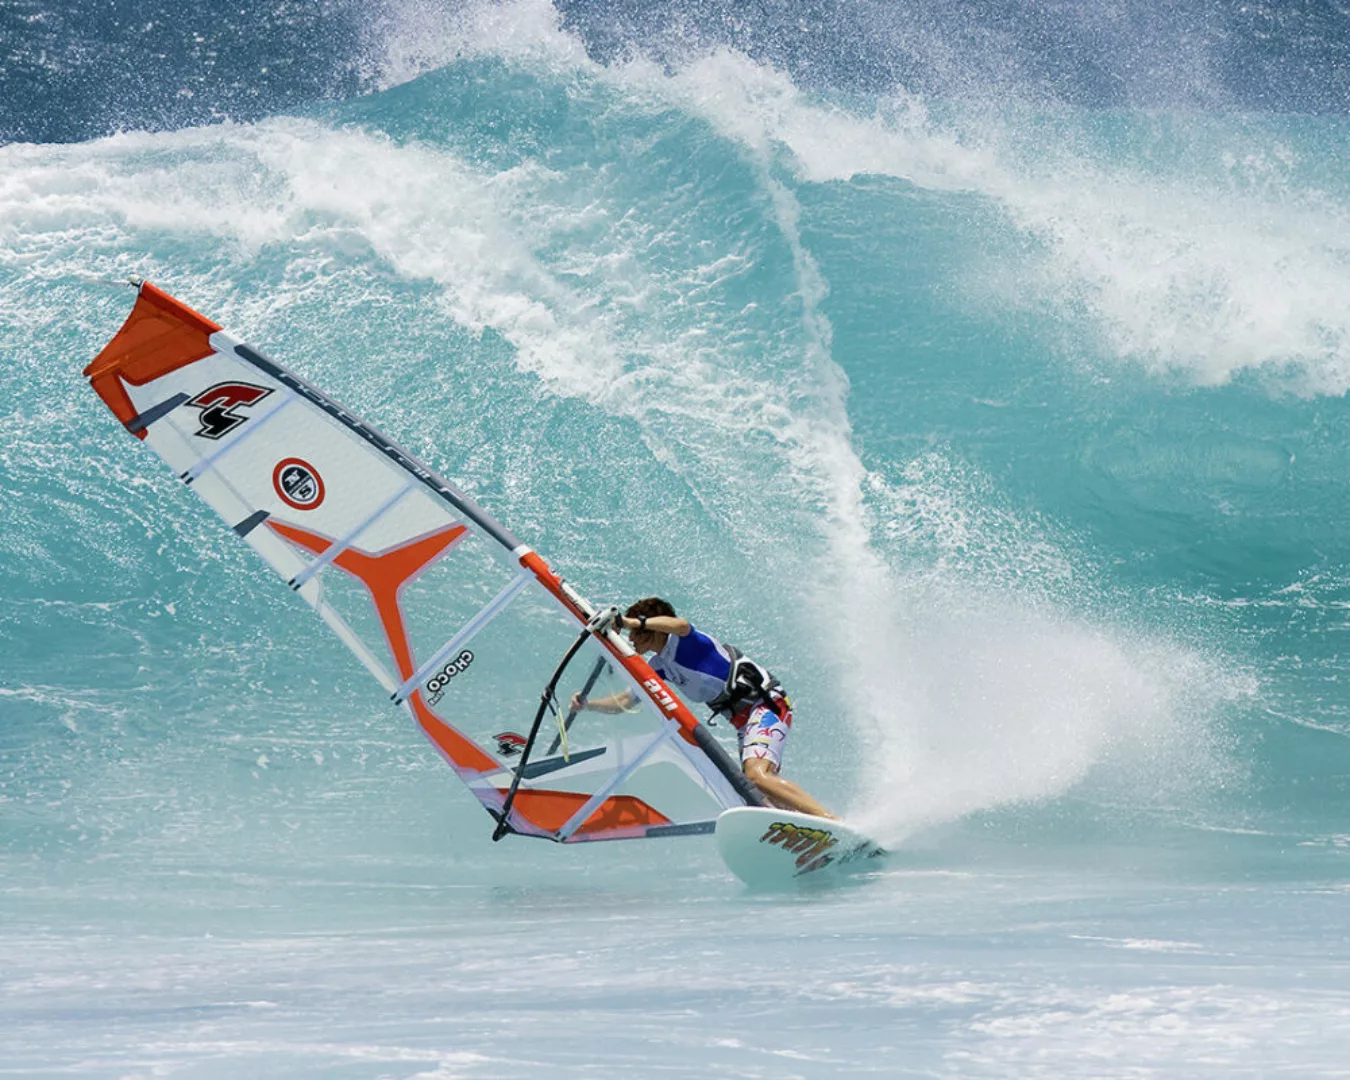 Fototapete "Surfer" 4,00x2,50 m / Glattvlies Perlmutt günstig online kaufen